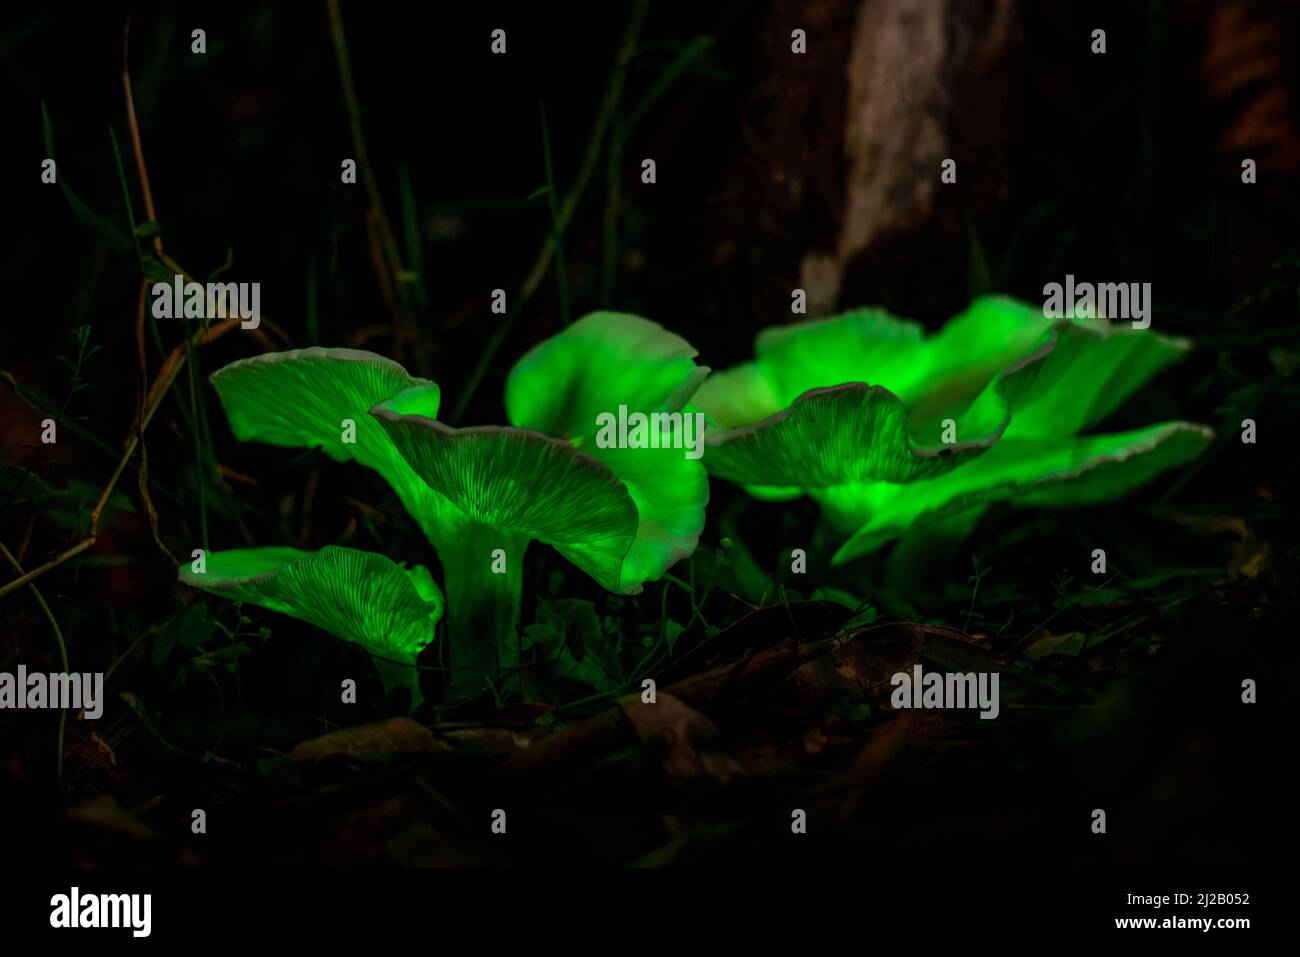 El hongo fantasma (Omphalotus nidiformis) es un hongo bioluminiscente que emite un suave resplandor verde por la noche. Foto de stock